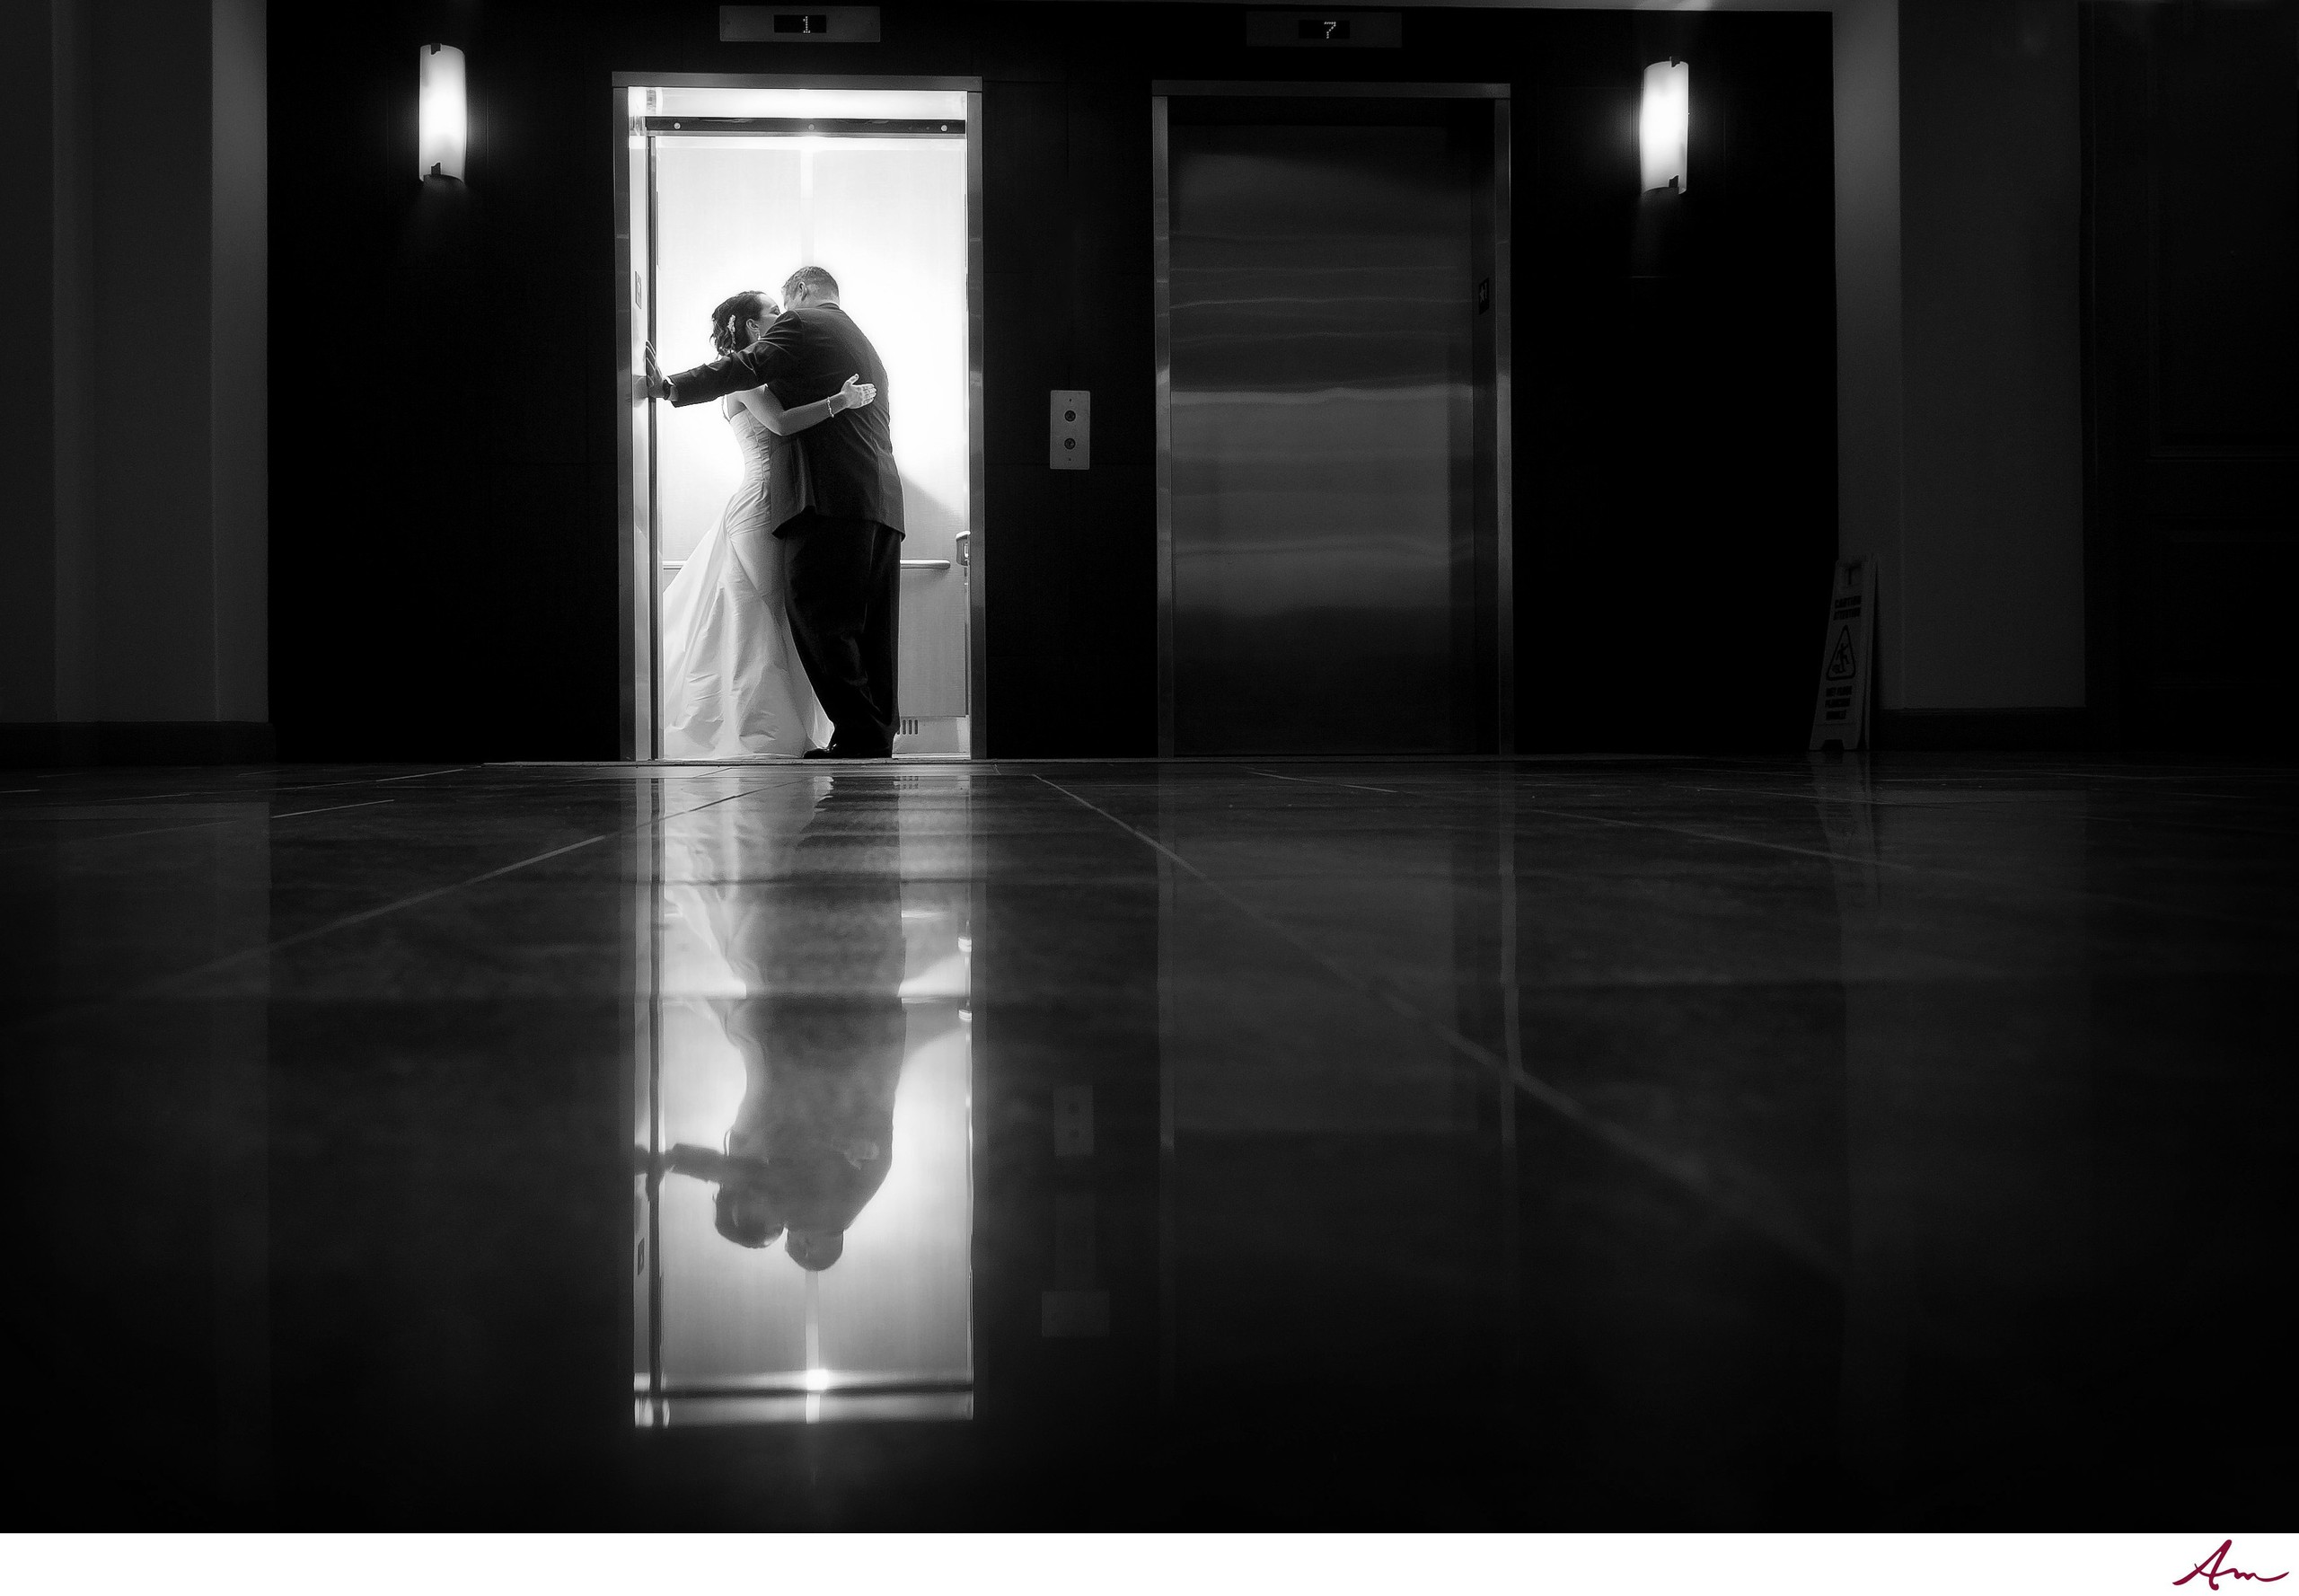 Halifax Bride And Groom Kissing In Elevator Alex Macaulay Photography Halifax Wedding